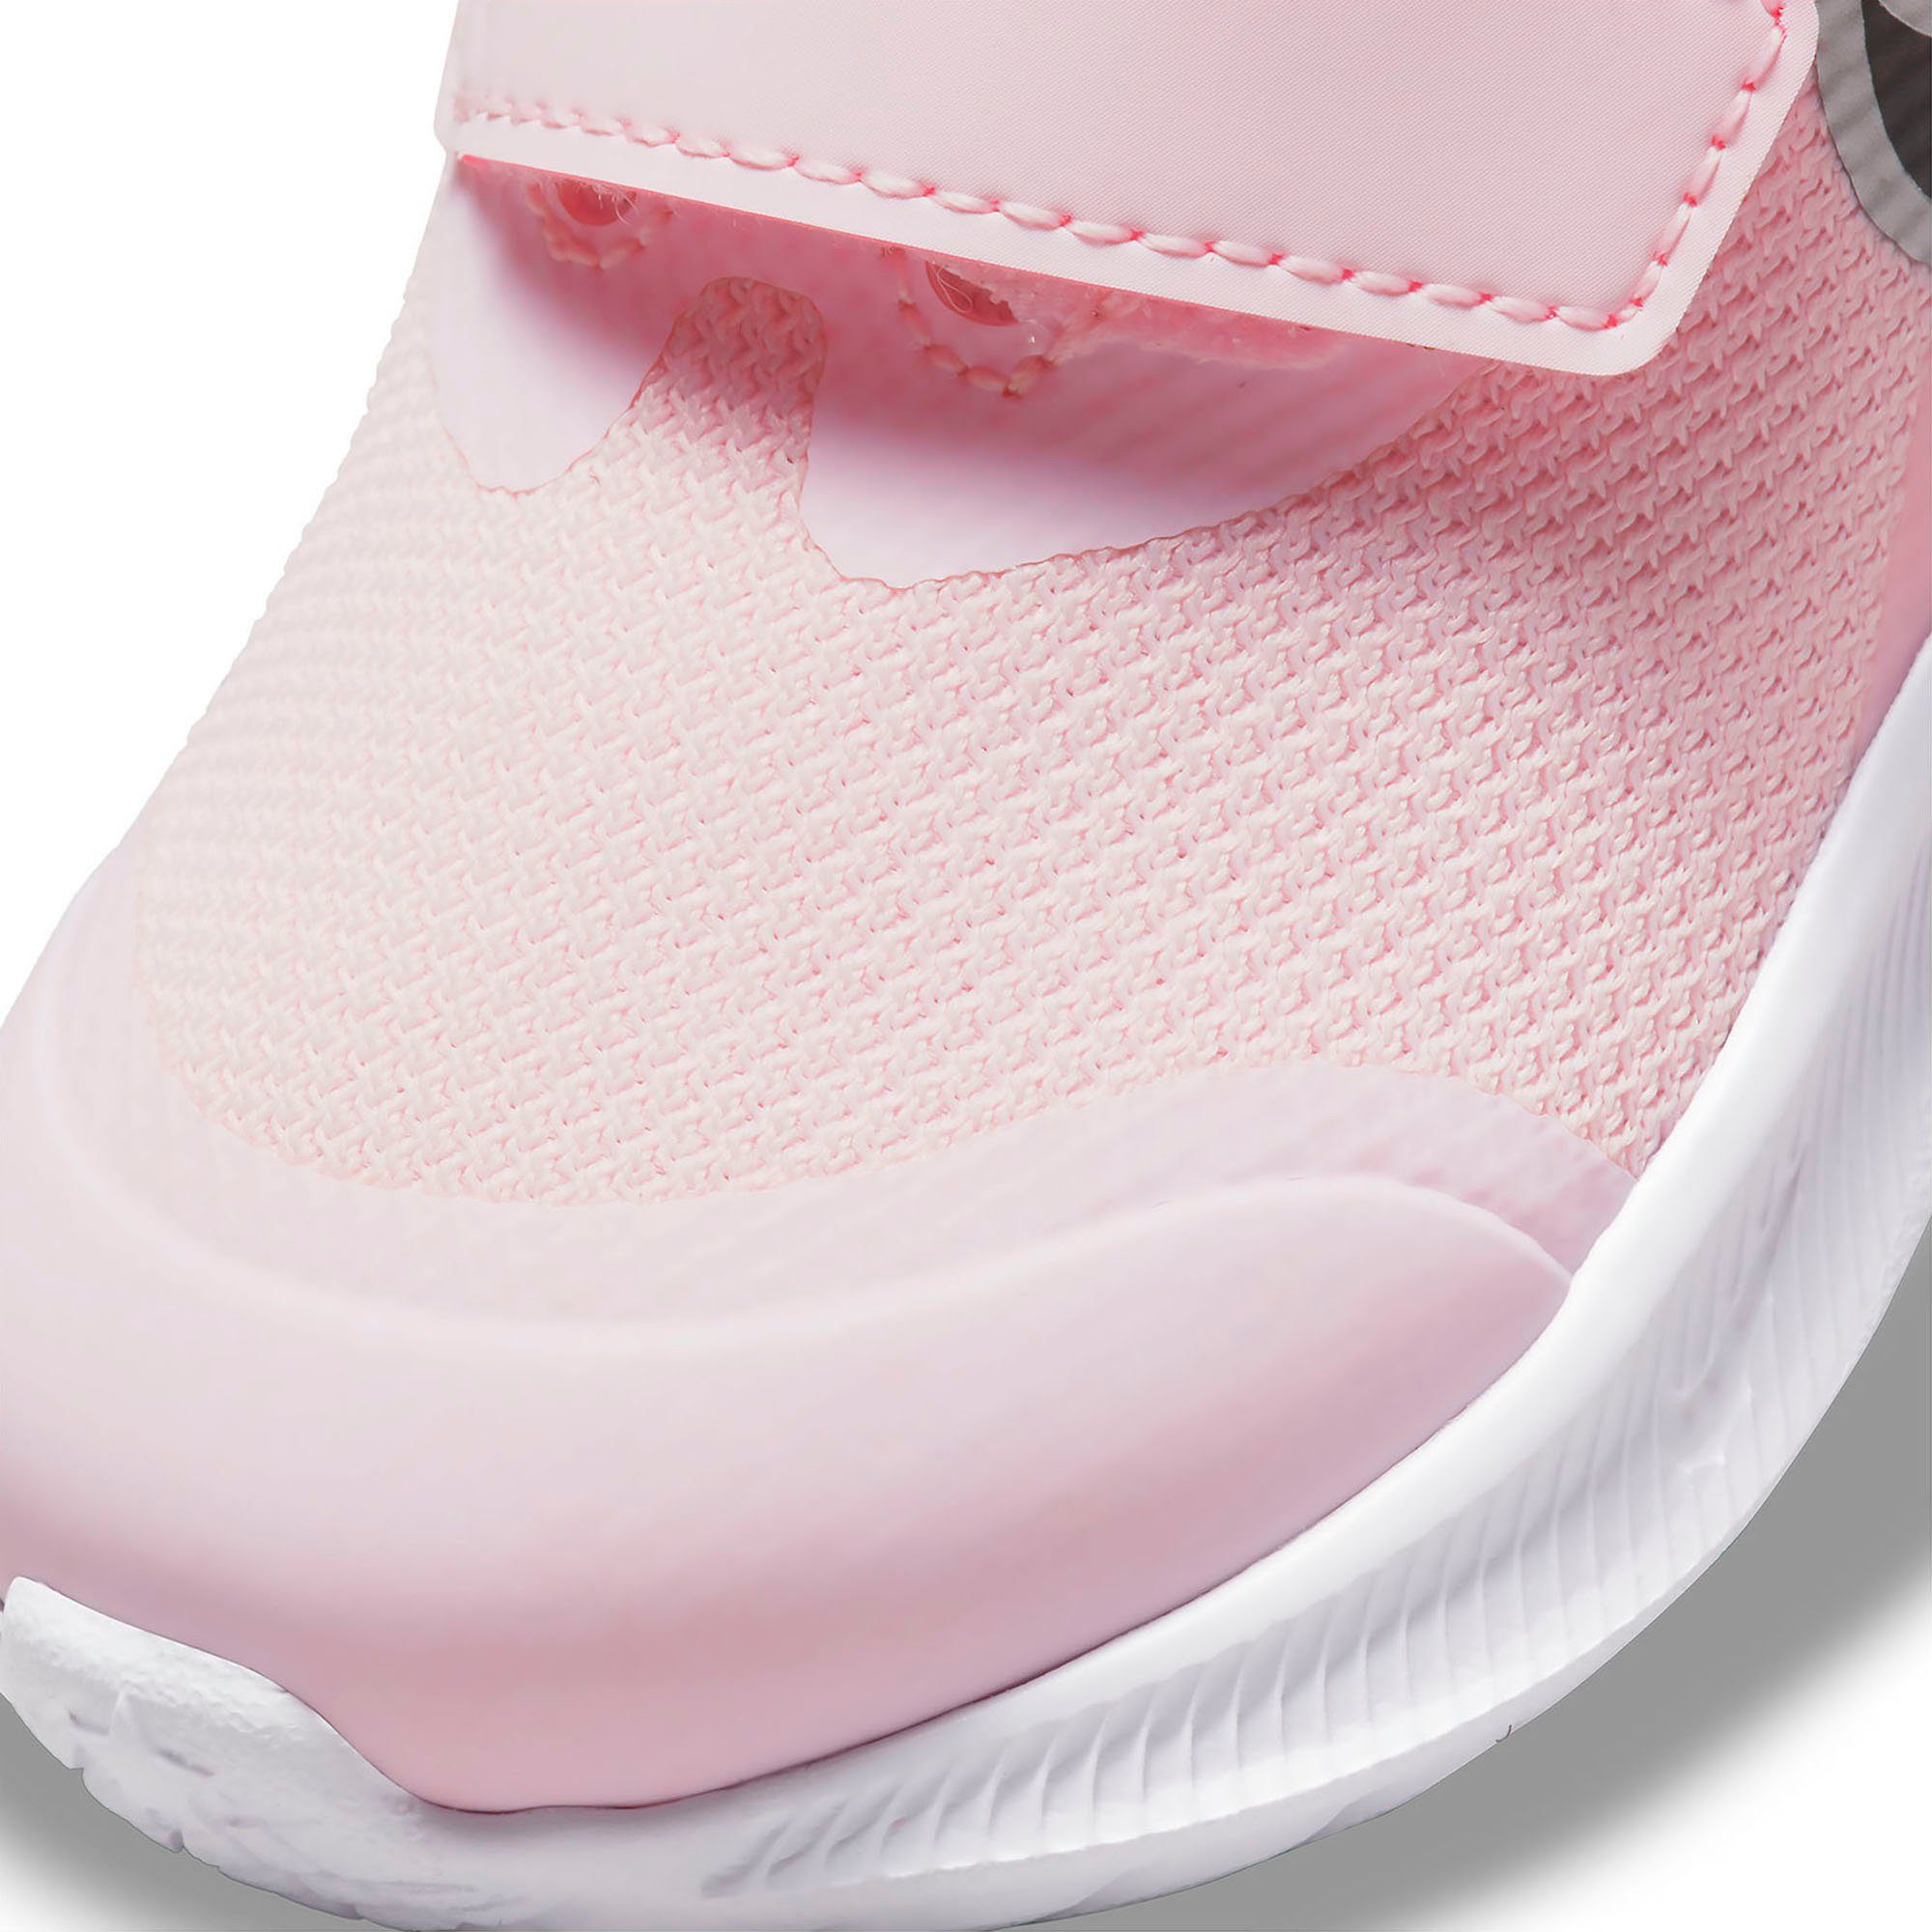 Nike STAR RUNNER mit Klettverschluss pink (TD) Laufschuh 3